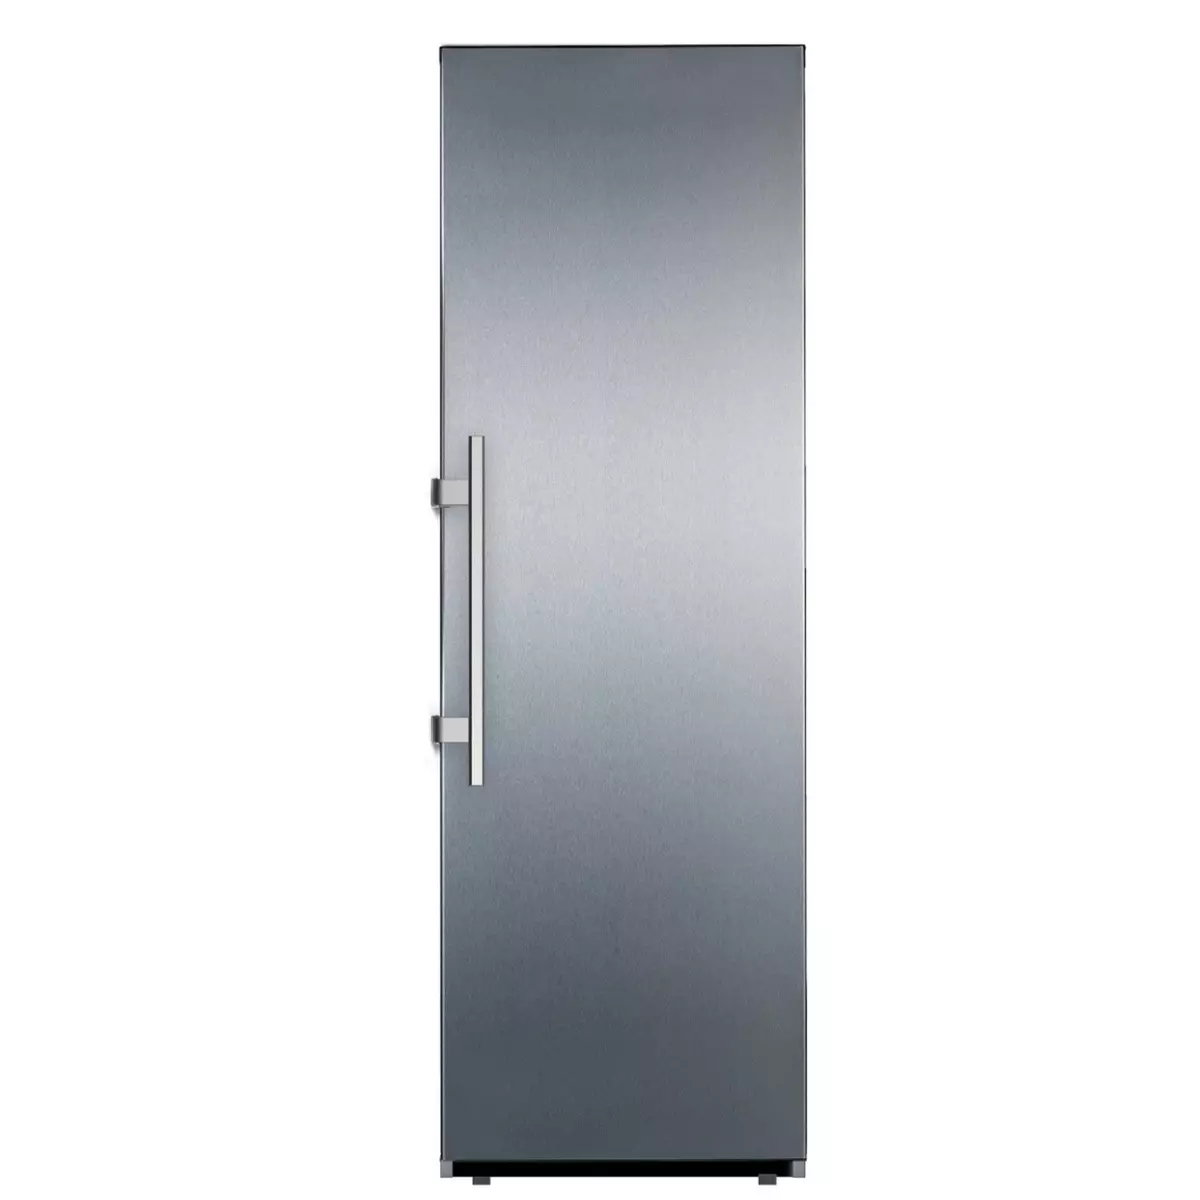 LIMIT Congelateur armoire LIVK186NF, 250 L, Froid No Frost